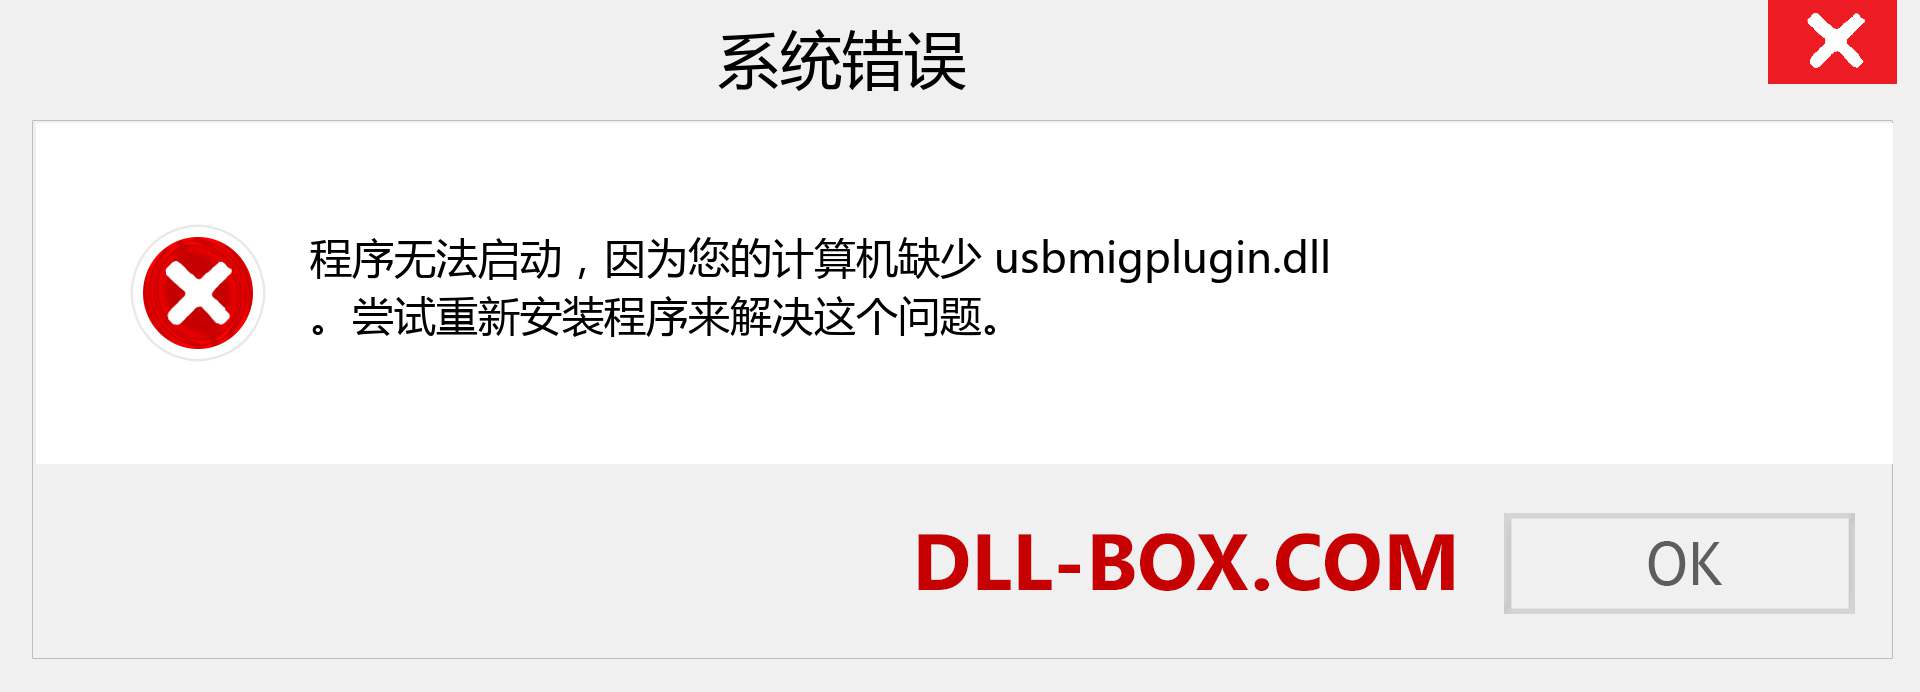 usbmigplugin.dll 文件丢失？。 适用于 Windows 7、8、10 的下载 - 修复 Windows、照片、图像上的 usbmigplugin dll 丢失错误